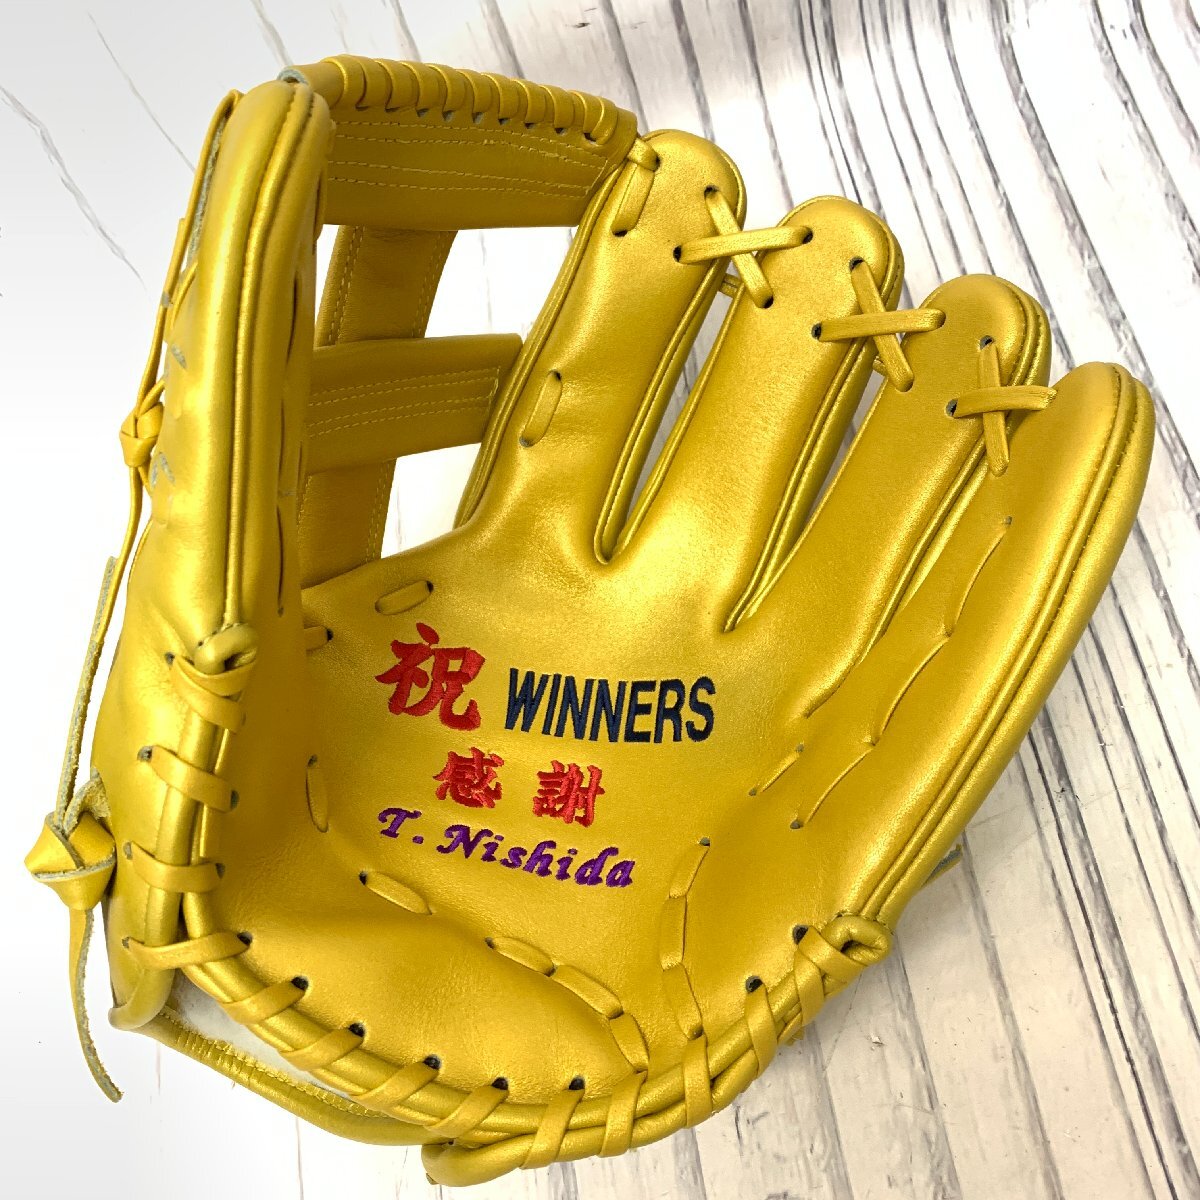 s001 A1 保管品 MIZUNO ミズノ 野球グローブ 硬式用 ゴールドカラー 記念刺繍あり スタンド付き 大人向け_画像3